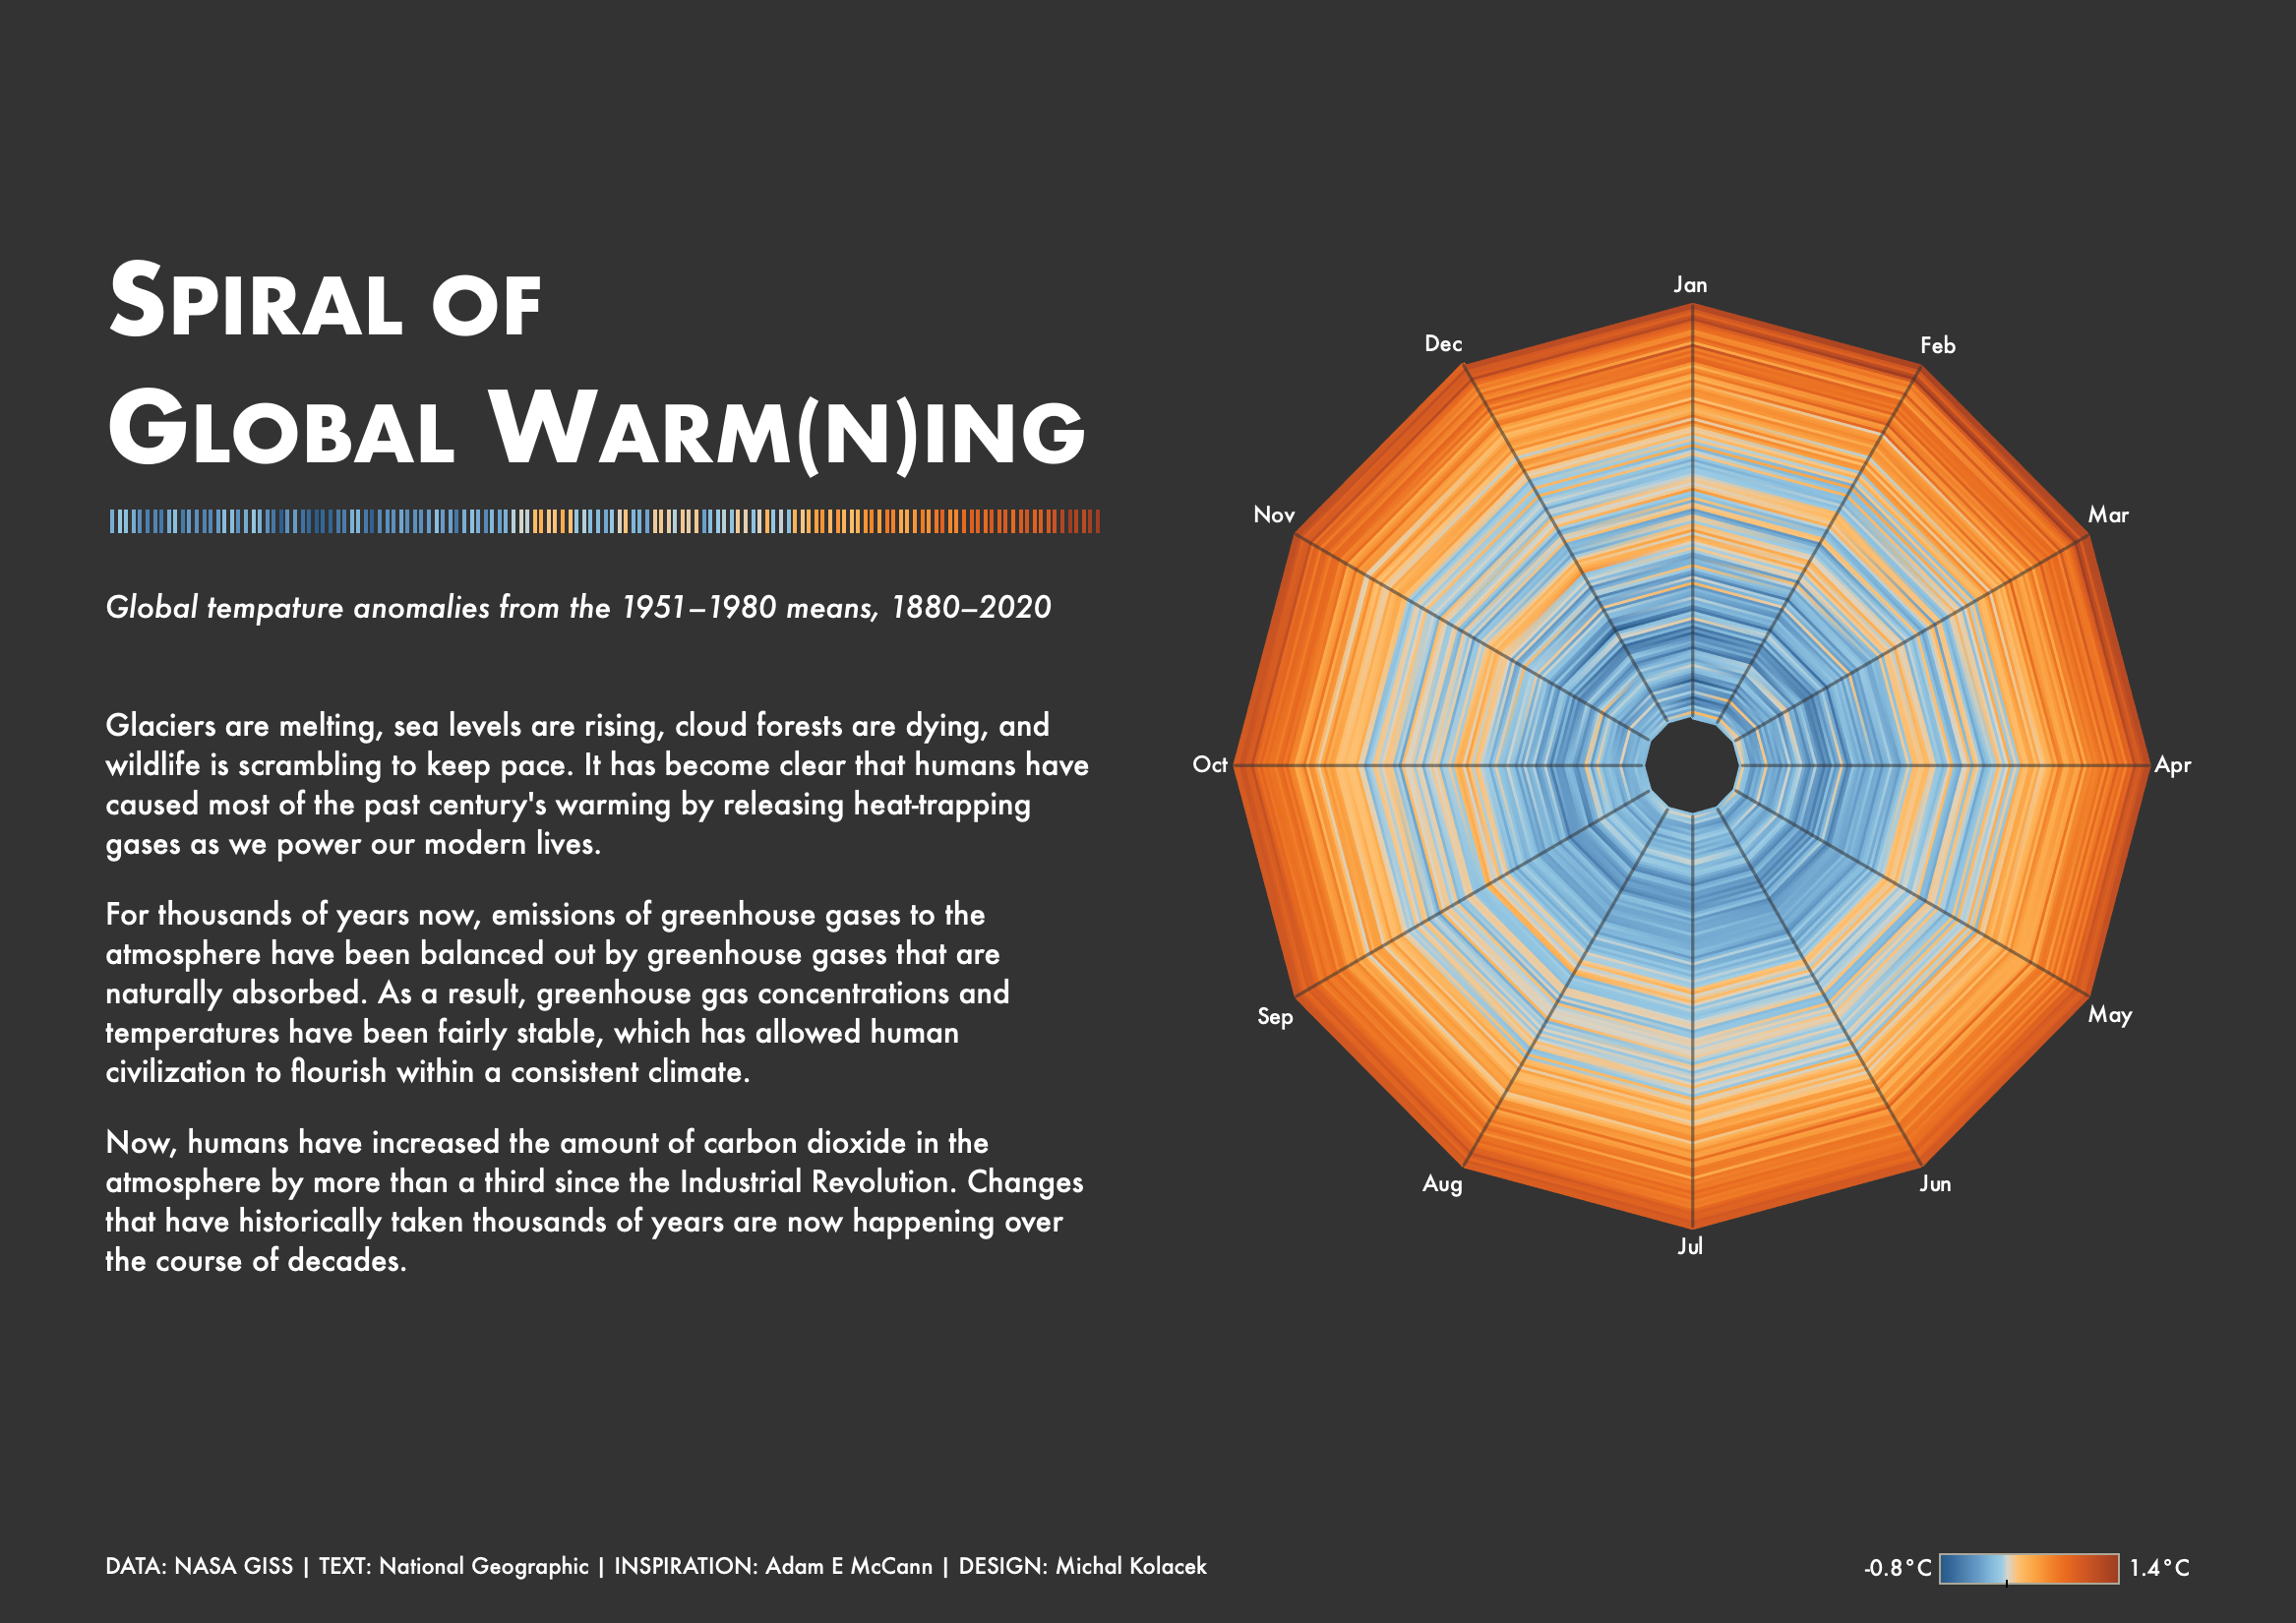 Spiral of Global Warm(n)ing